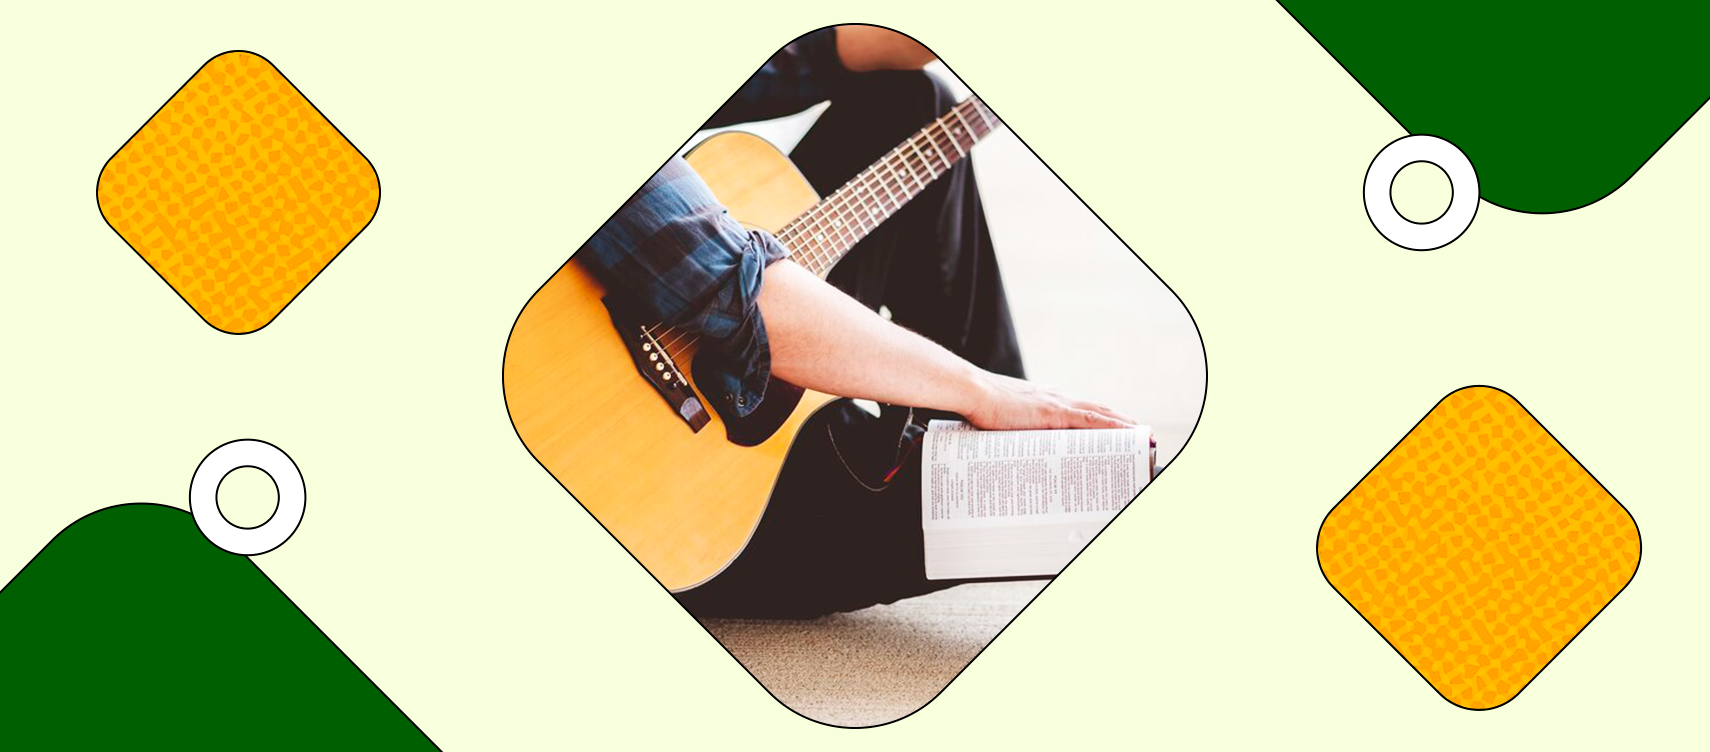 20 acordes fáciles de canciones cristianas para tocar en la guitarra